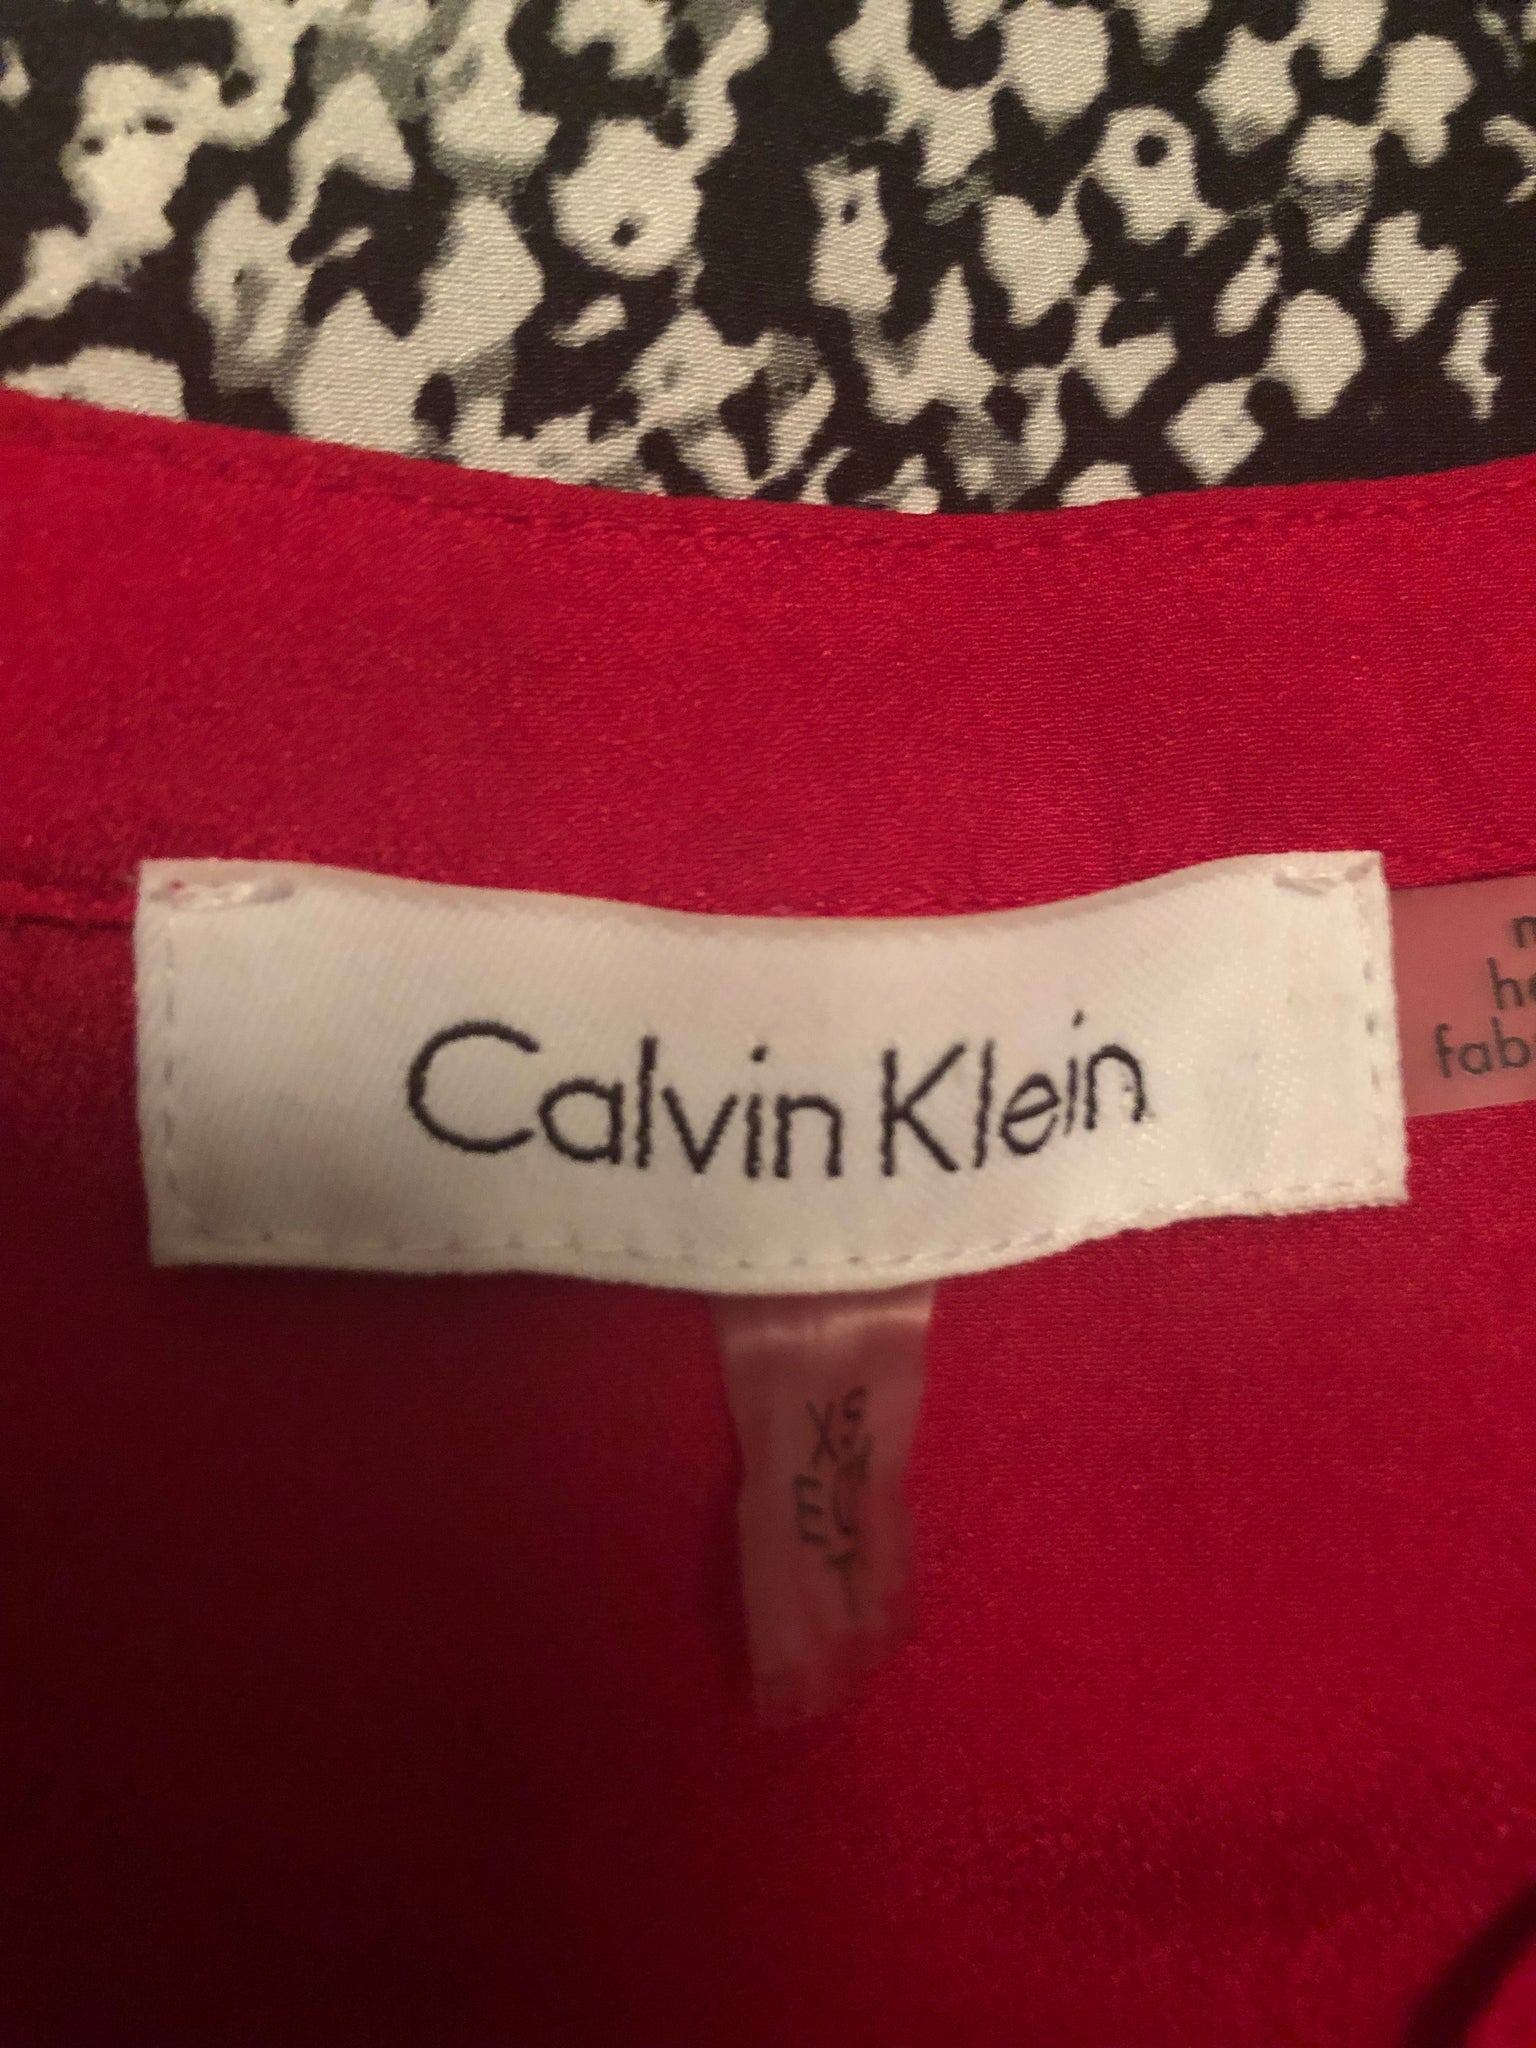 Calvin Klein Button Up